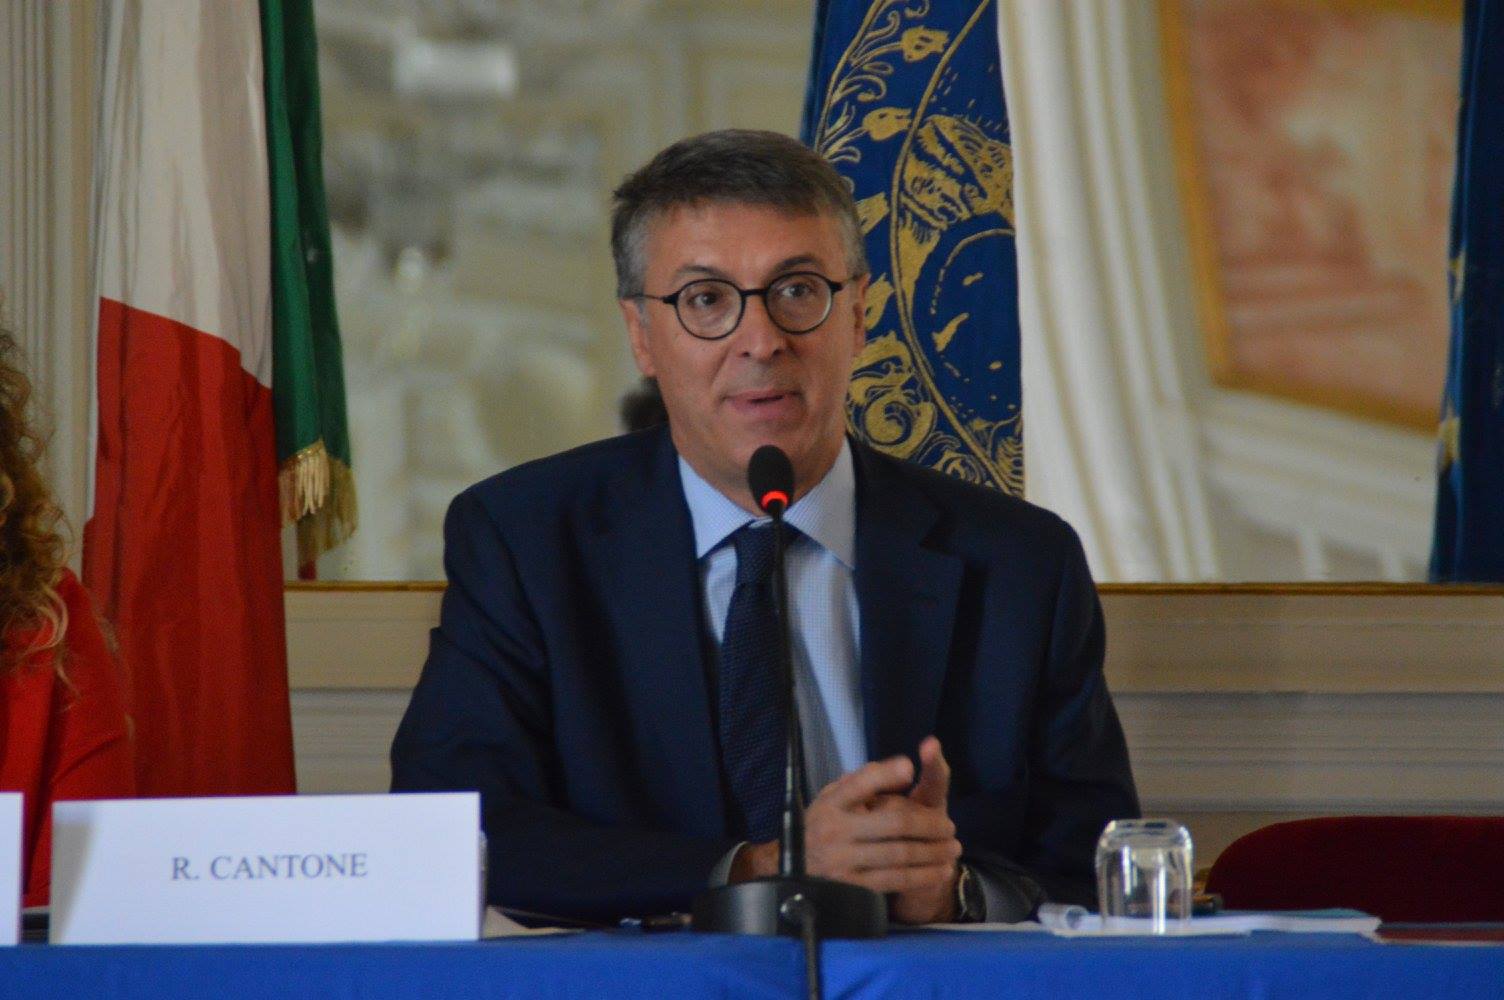 Procuratori Antimafia e Perugia chiedono di essere sentiti sul caso “Dossieraggio”: perché?